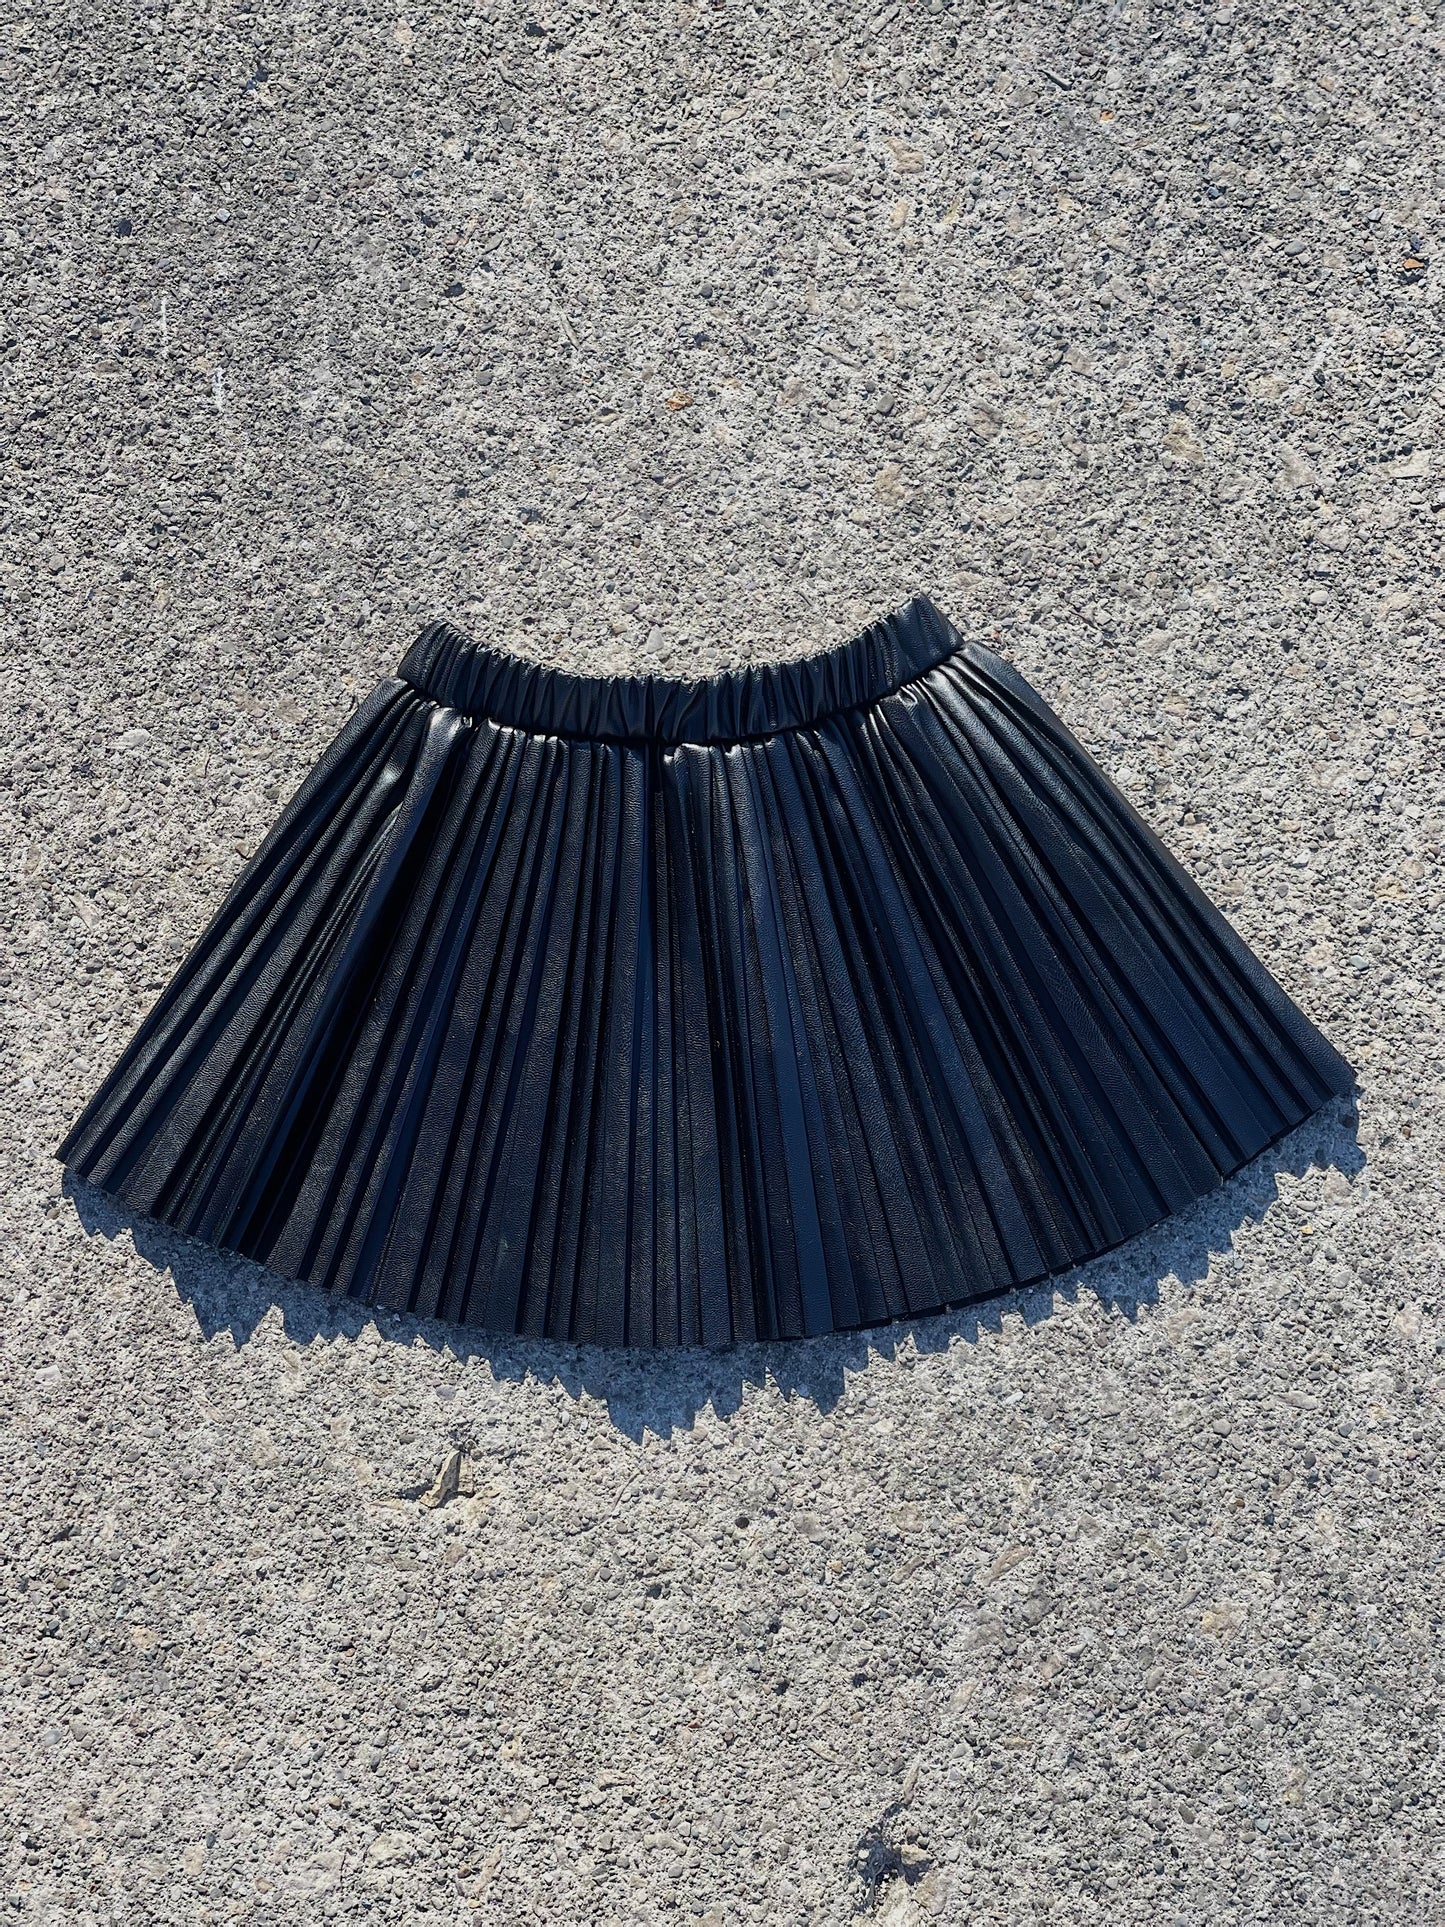 World Traveler PU Leather Pleated Toddler Girl Skirt (Black)